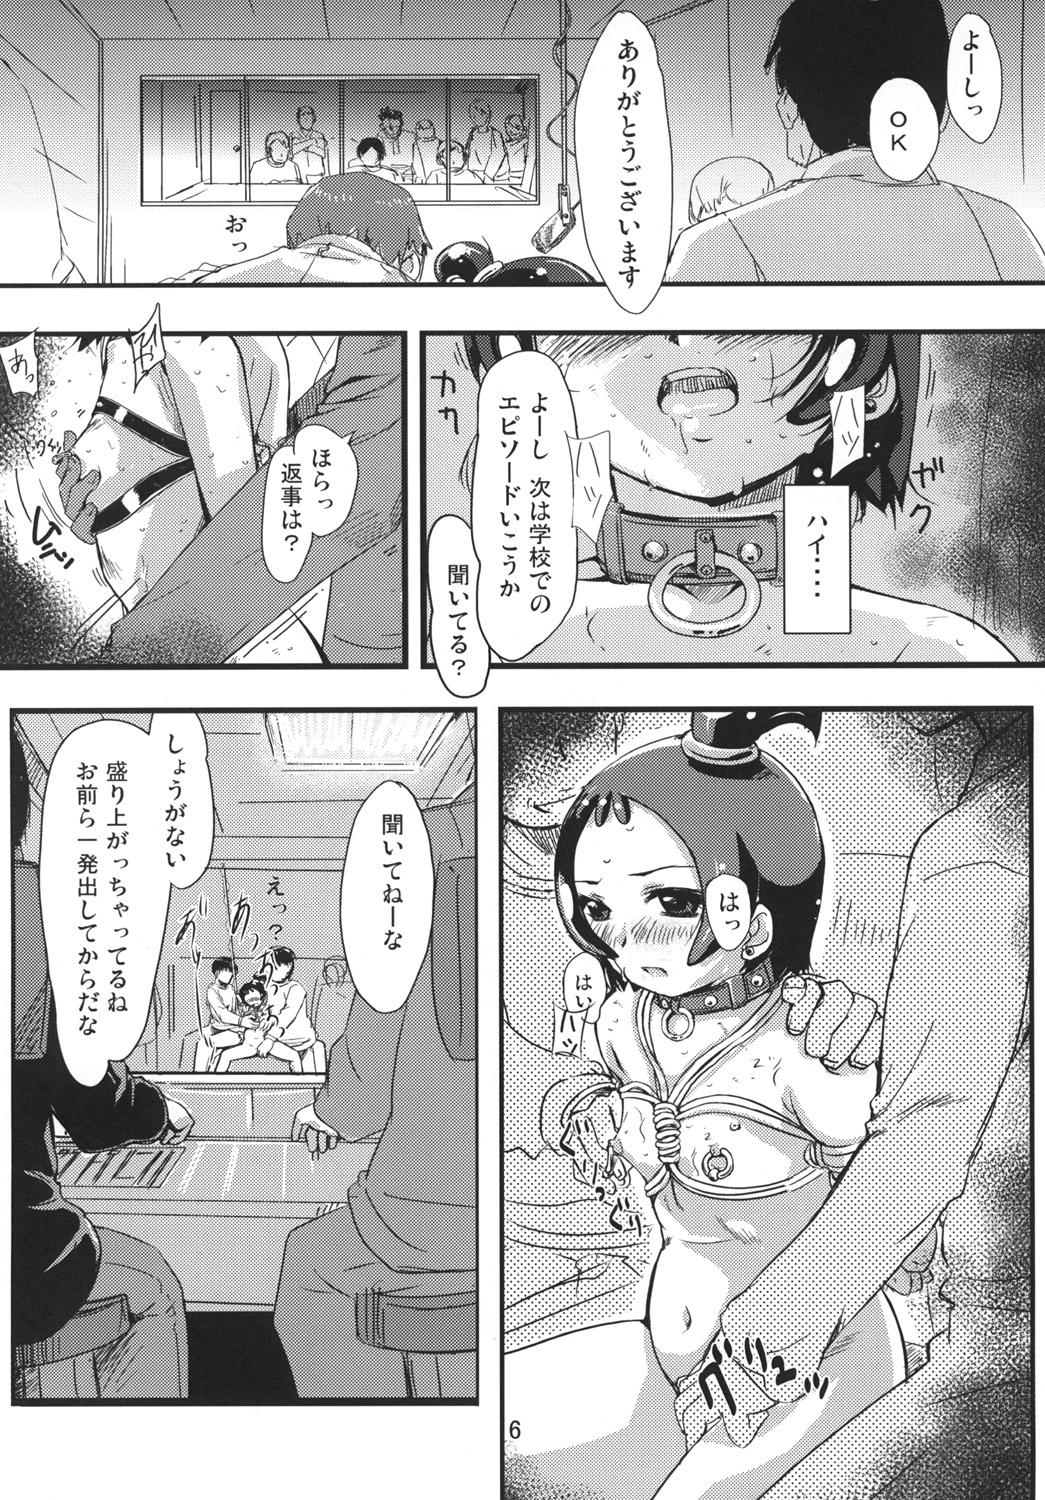 Flaca Onpu Zukushi 9 - Ojamajo doremi Para - Page 5